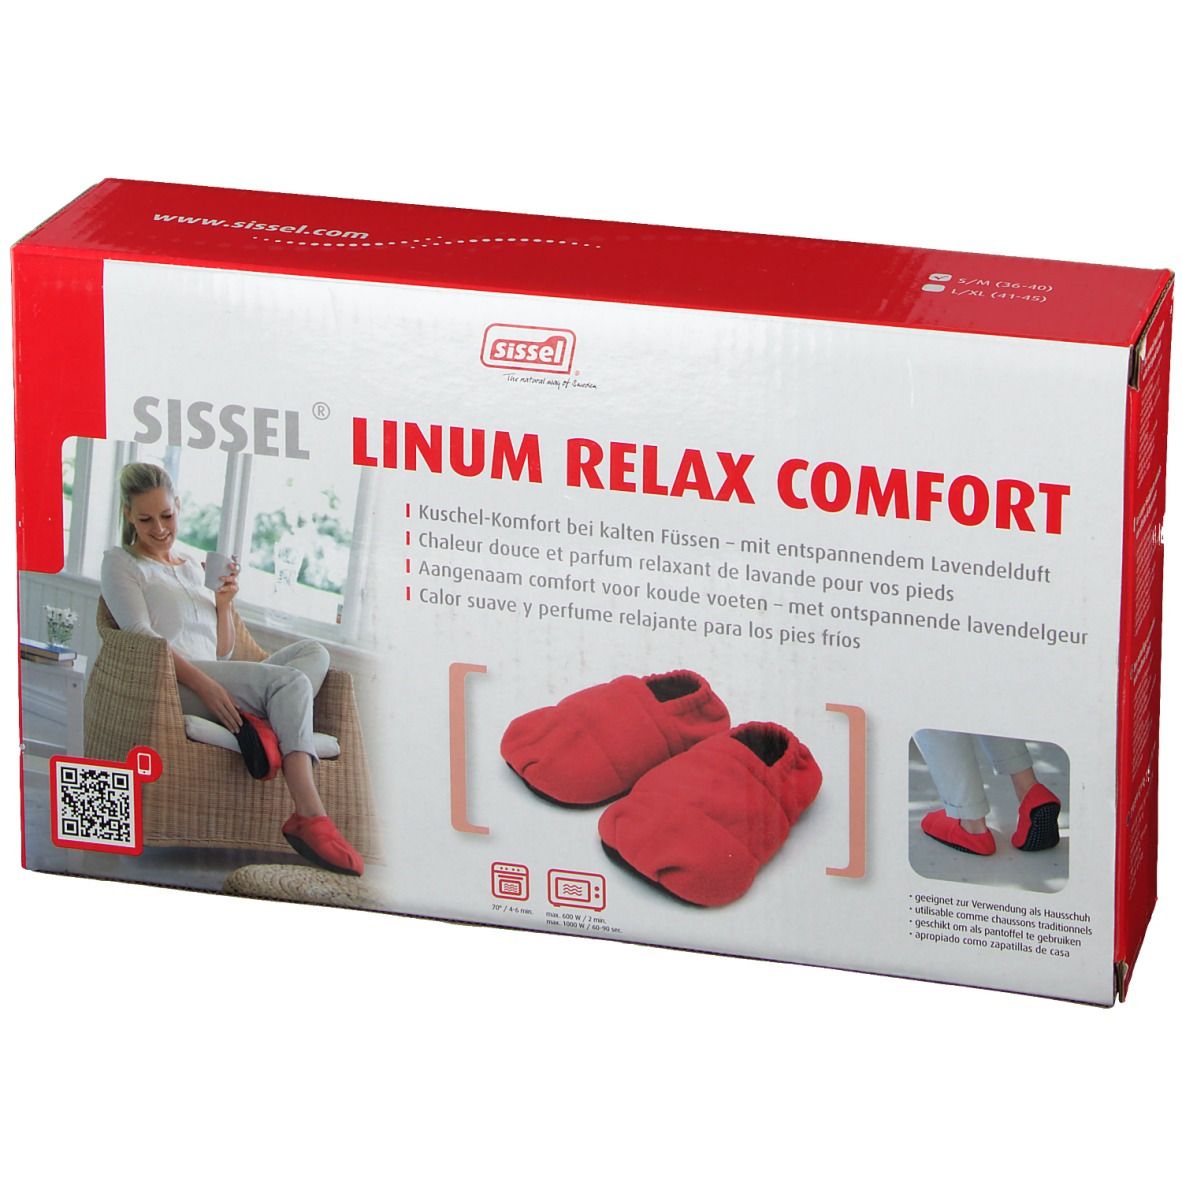 SISSEL® Linum relax comfort